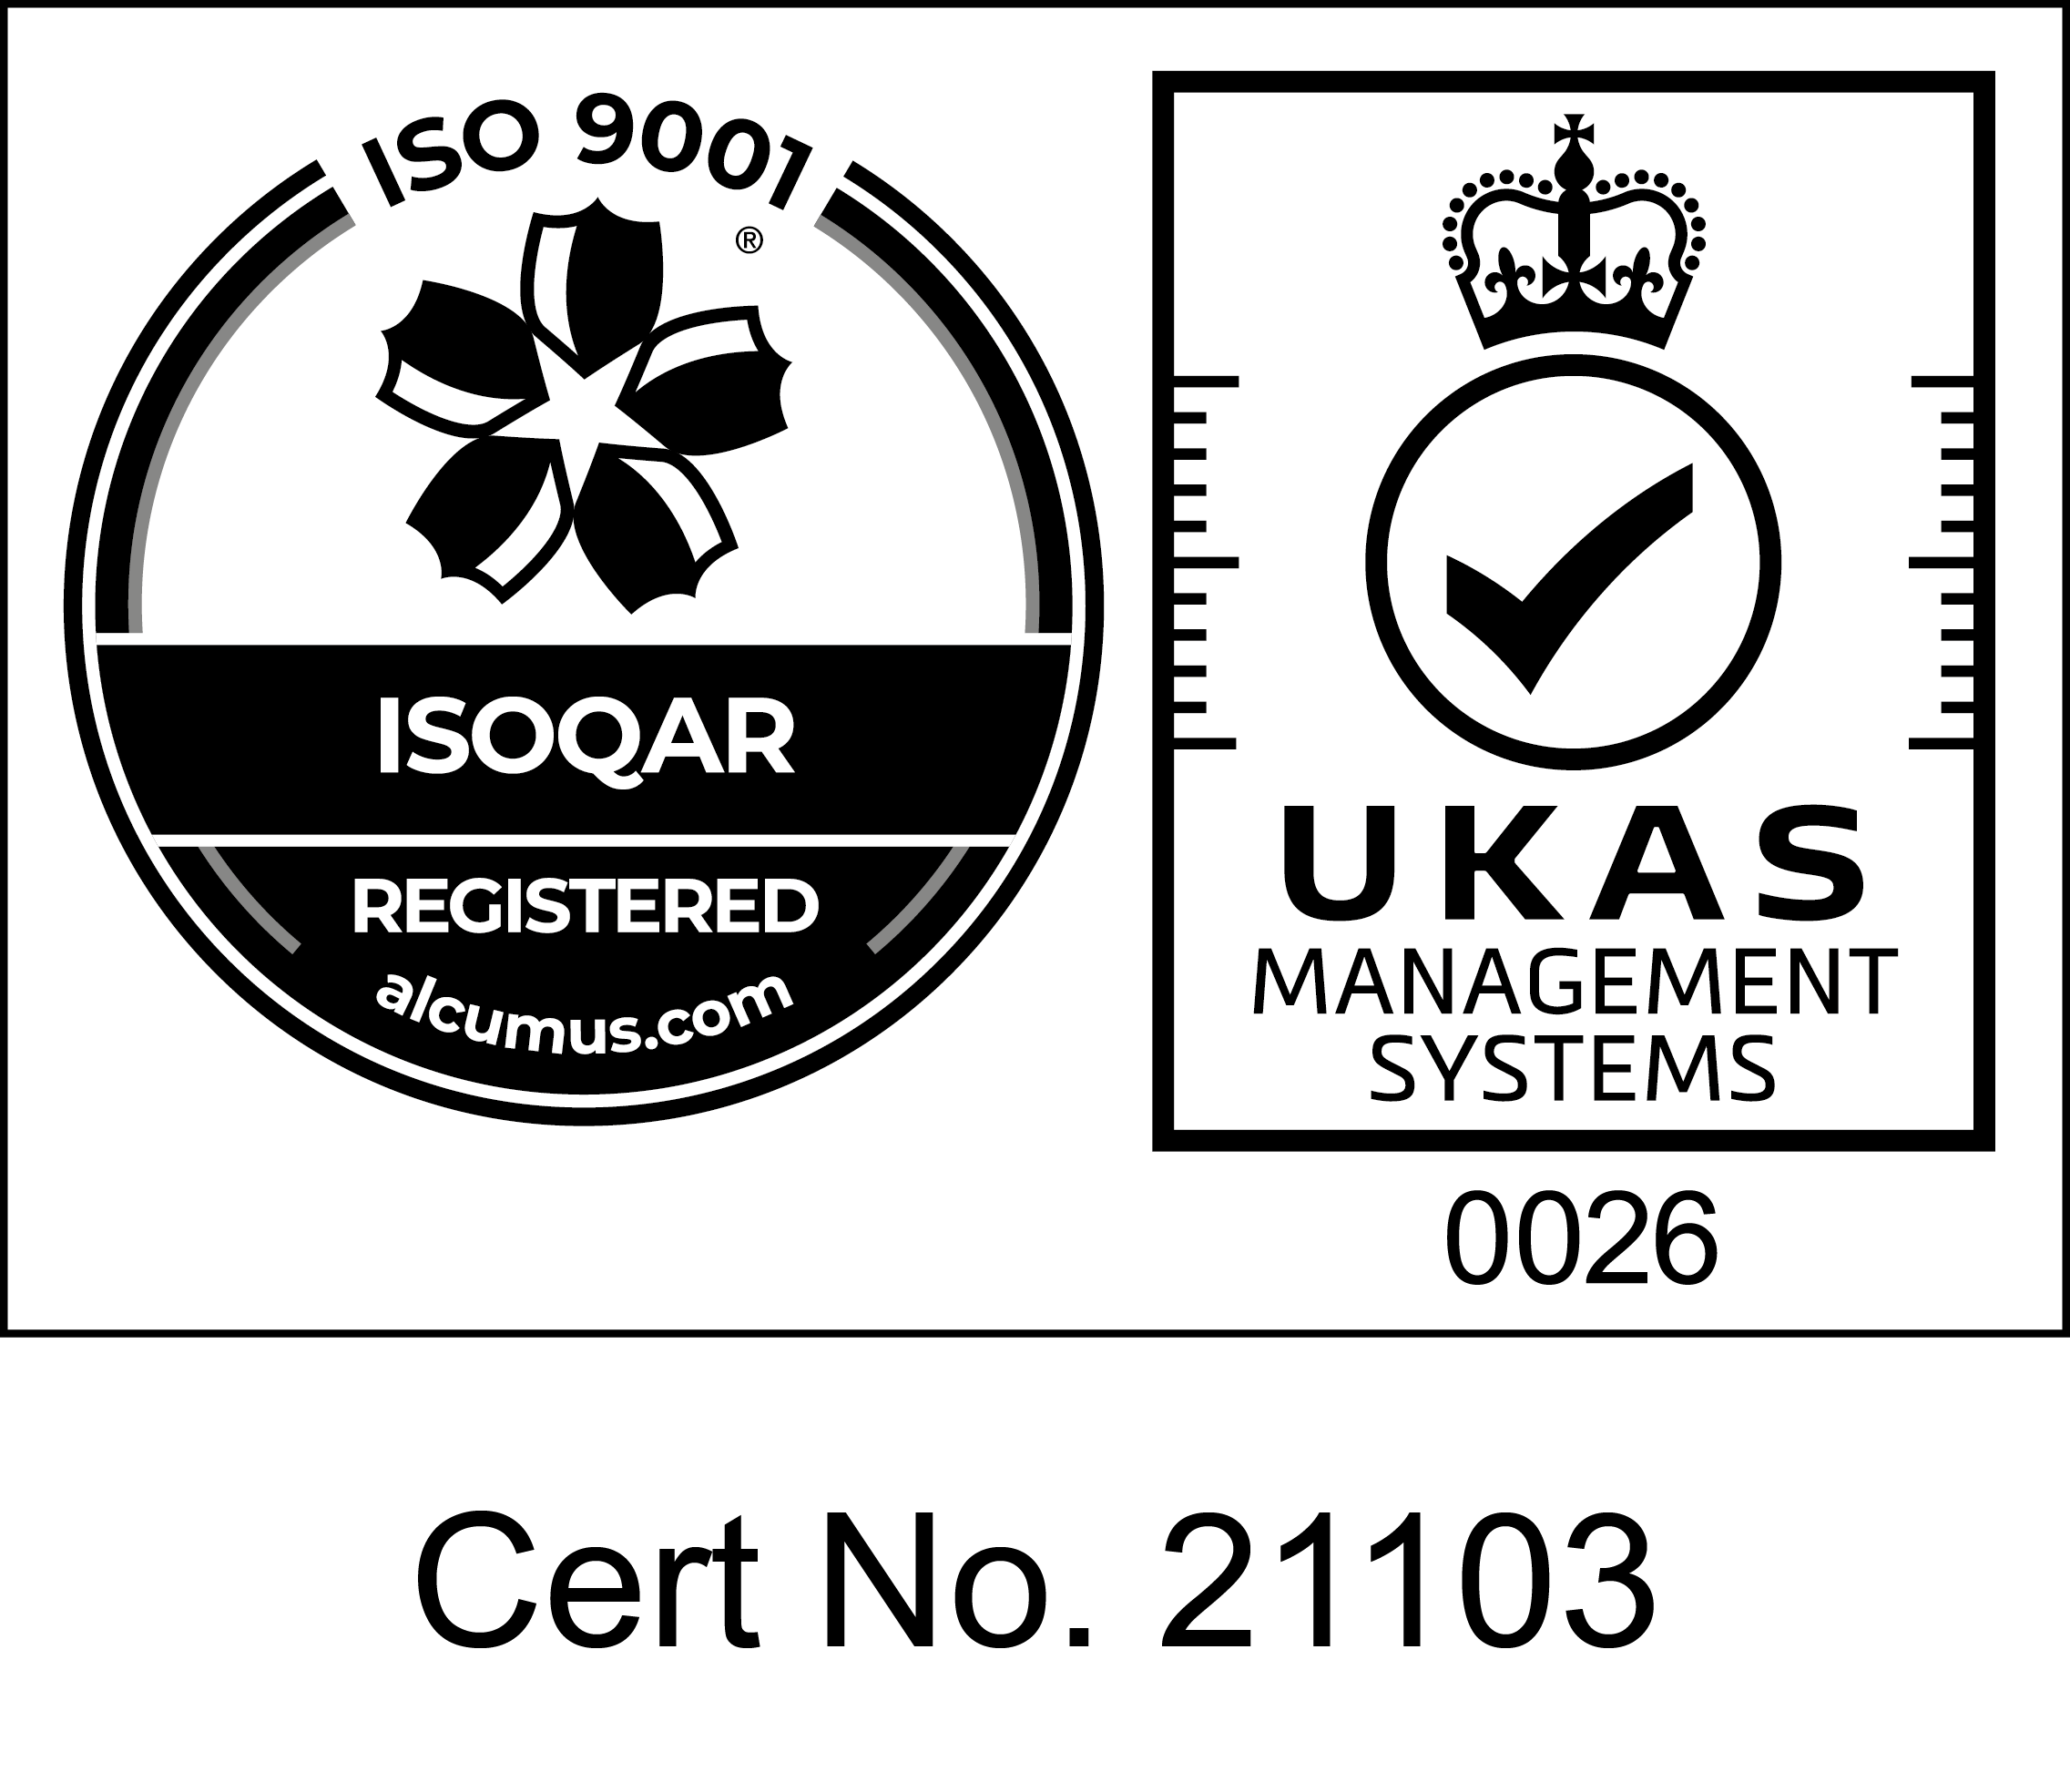 UKAS-ISO9001-Mark-cl-27_Mono